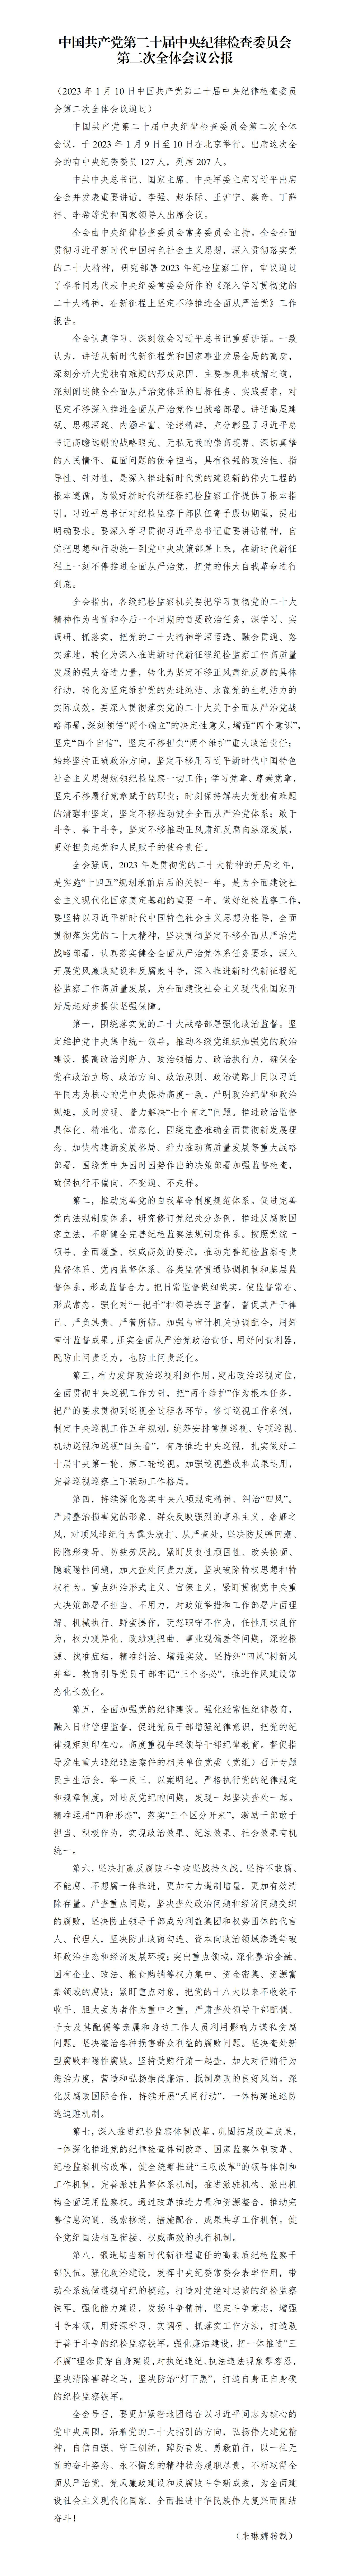 中國共產黨第二十屆中央紀律檢查委員會第二次全體會議公報_01.jpg